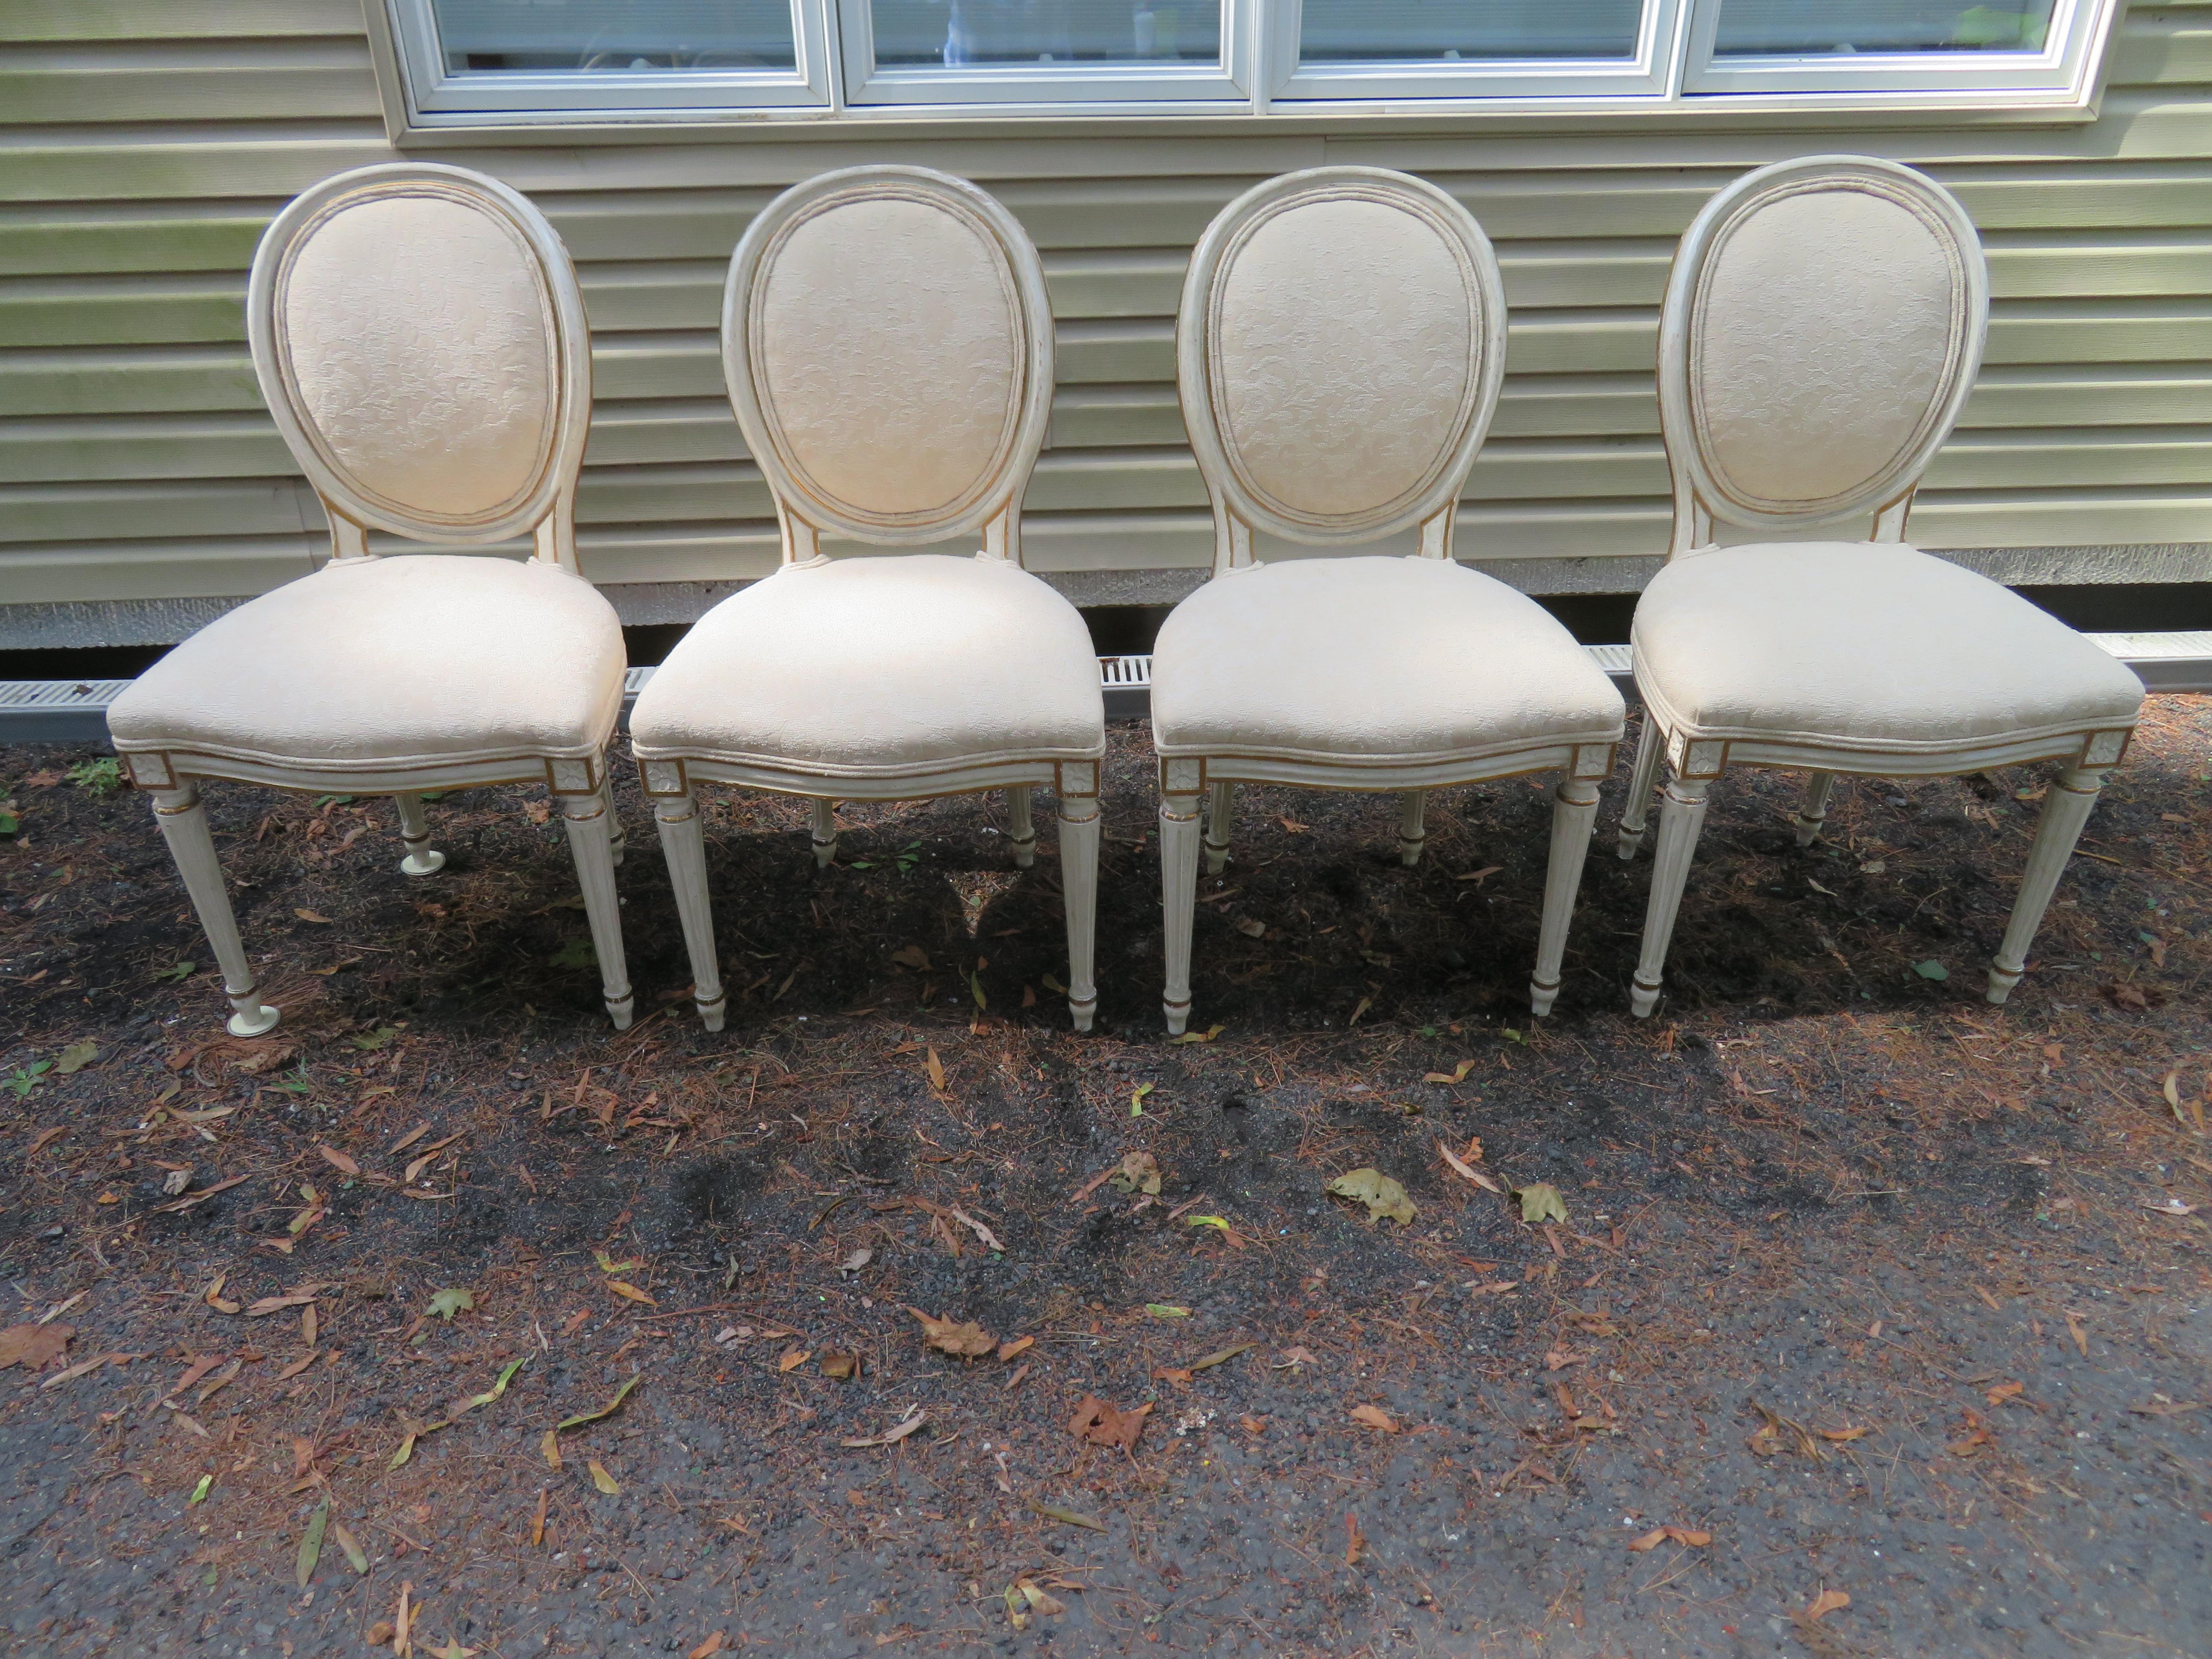 Joli ensemble de 8 chaises à manger à pieds cannelés de style Dorothy Draper. Cet ensemble est dans un état vintage merveilleux - nous adorons la tapisserie avec le tissu rayé contrastant sur les dos.